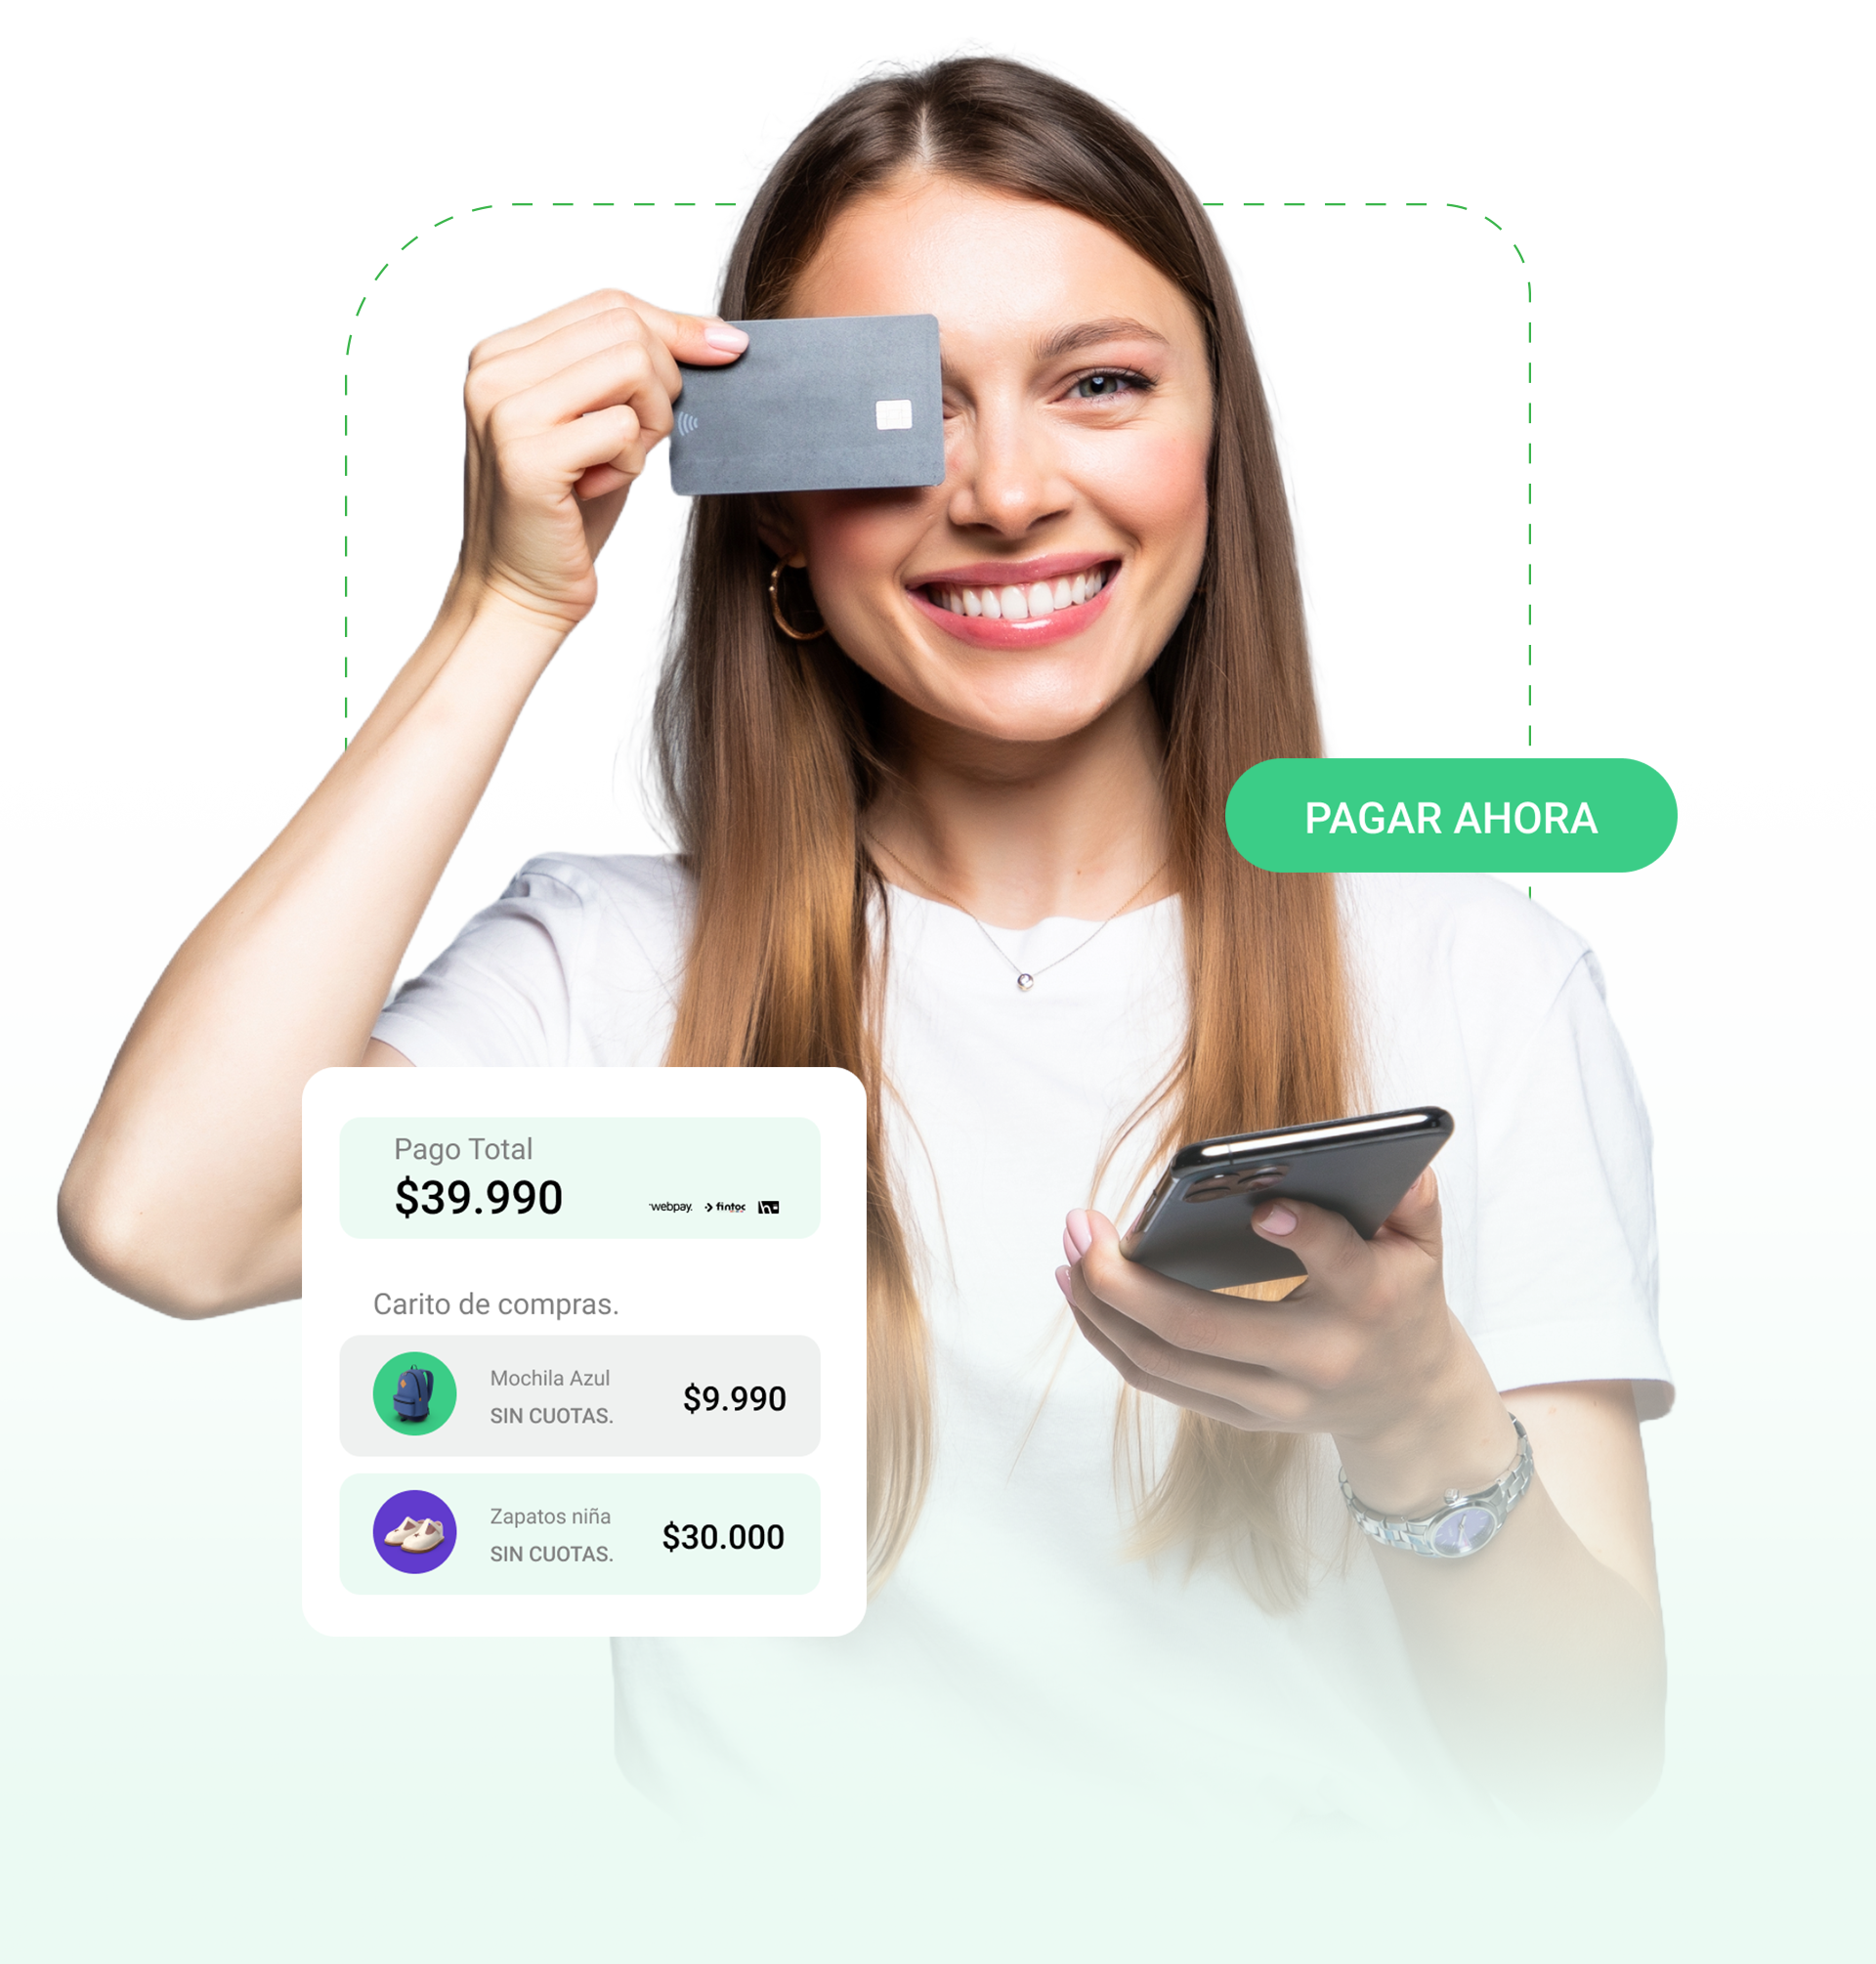 Mujer joven sonriendo, sostiene una tarjeta y un celular en sus manos. En la imagen se sobreimprime la frase “Pagar ahora” junto a una simulación de una venta por $39.990